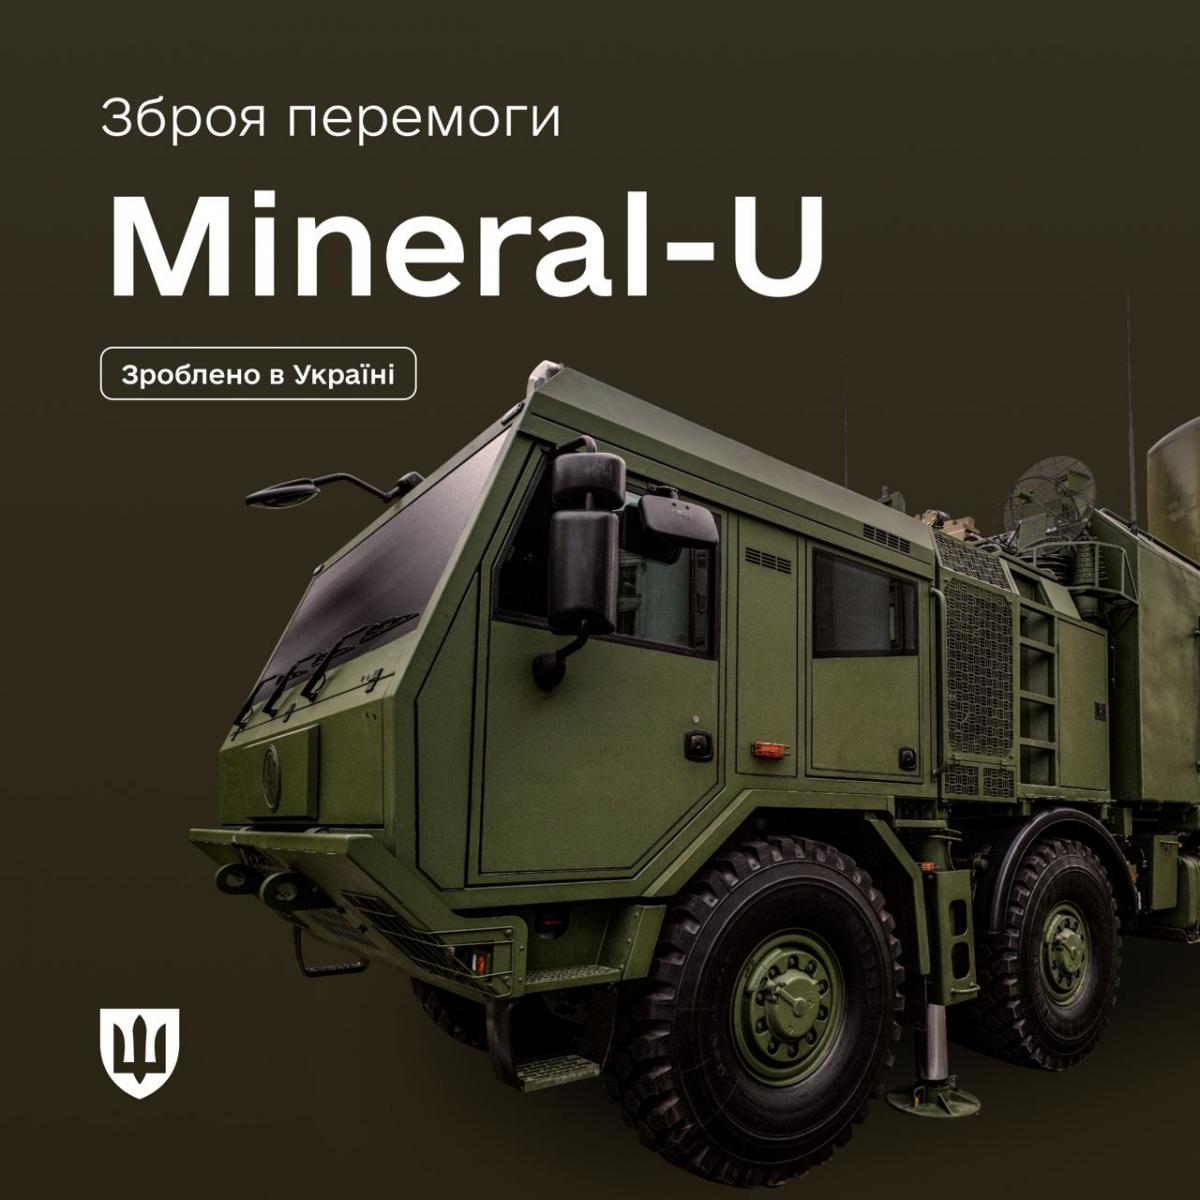 "Минерал-У" - это украинский мобильный многофункциональный радиолокационный комплекс / фото Минобороны Украины